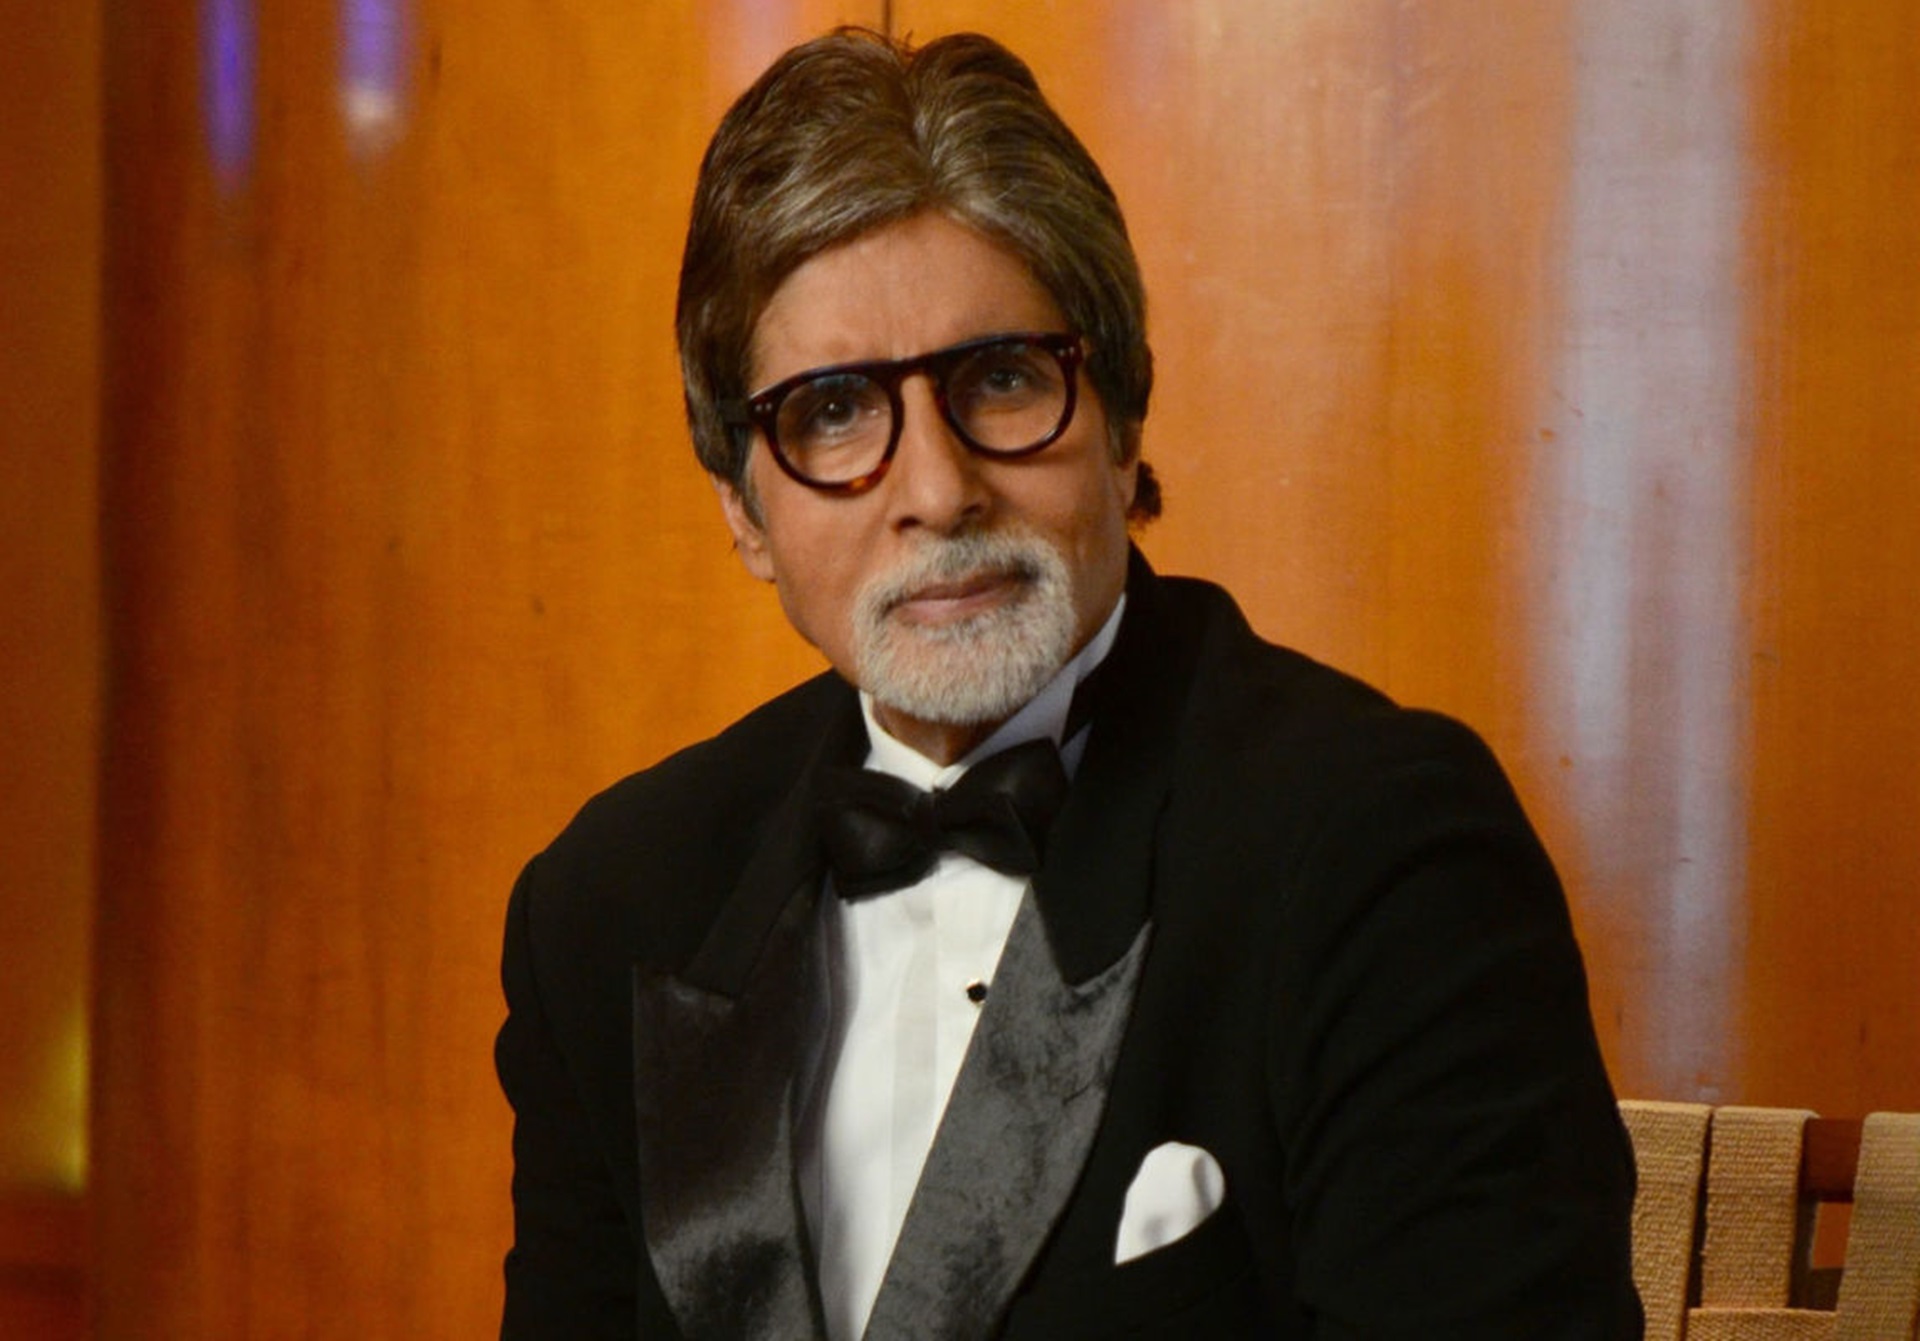 Amitabh Bachchan In New Latest Movie Hd Wallpapers - Amitabh Bachchan And Rishi Kapoor Movie - HD Wallpaper 